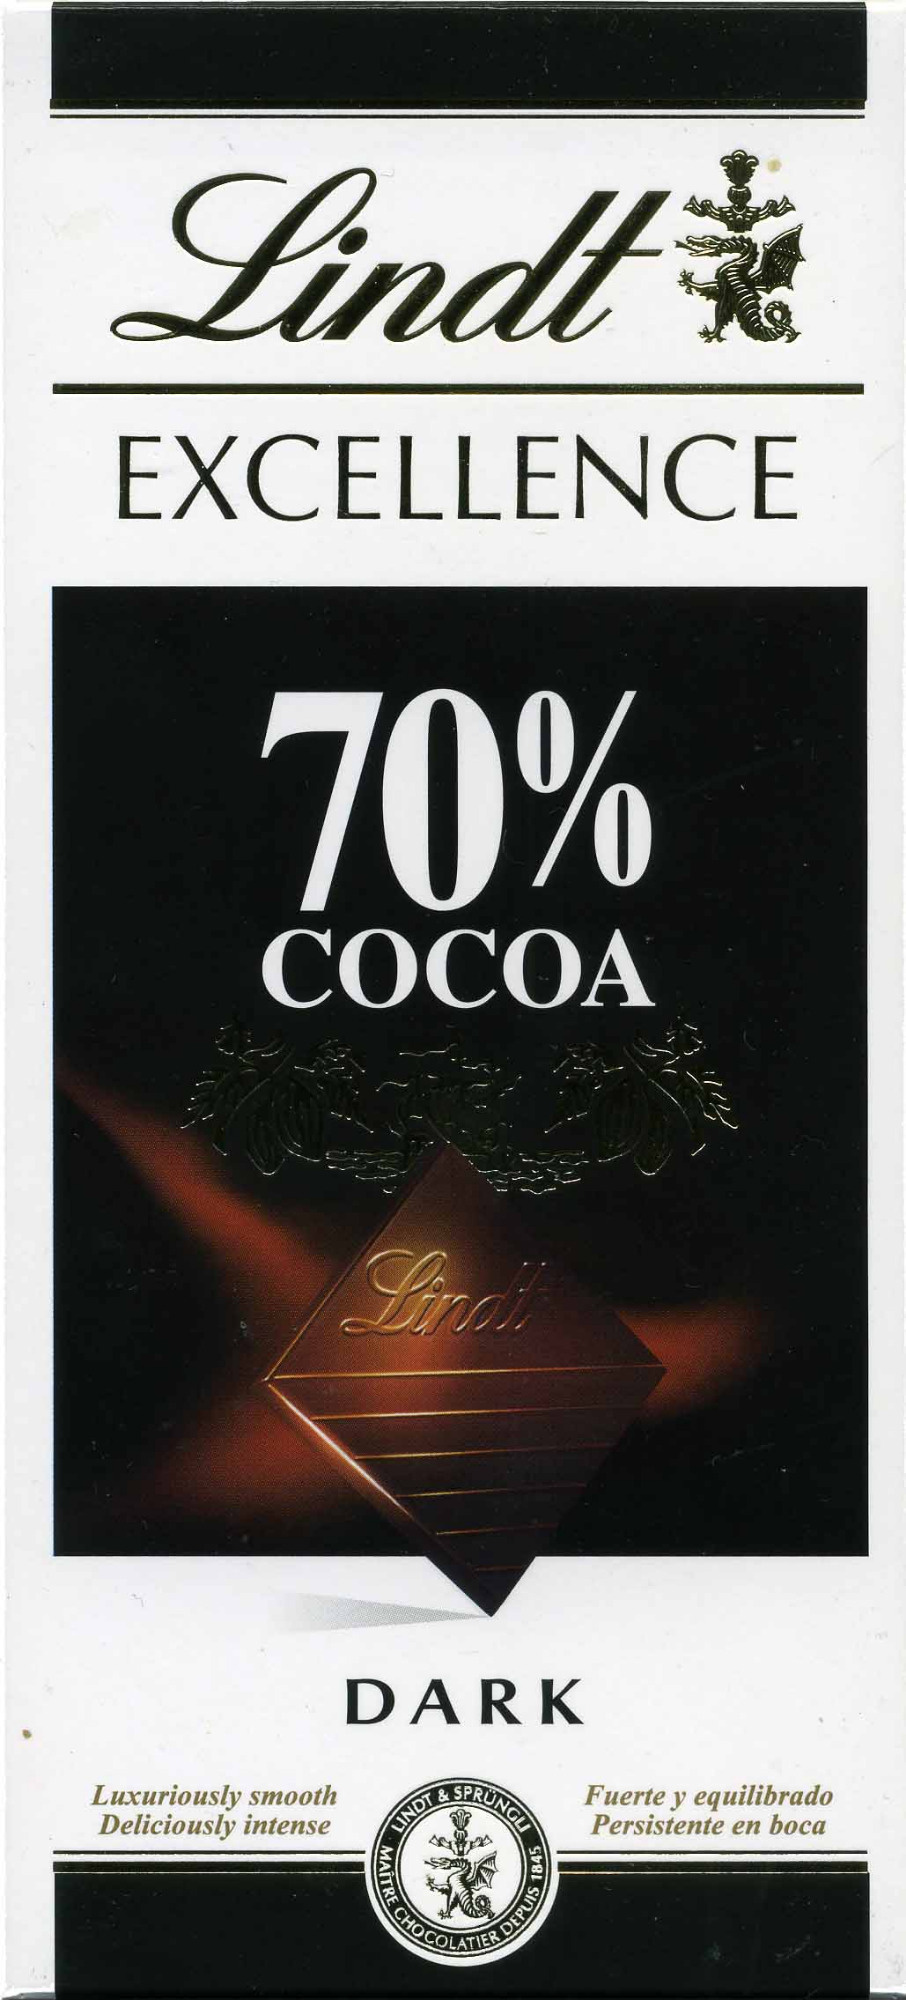 Schokolade 70% cocoa - Produkt - en